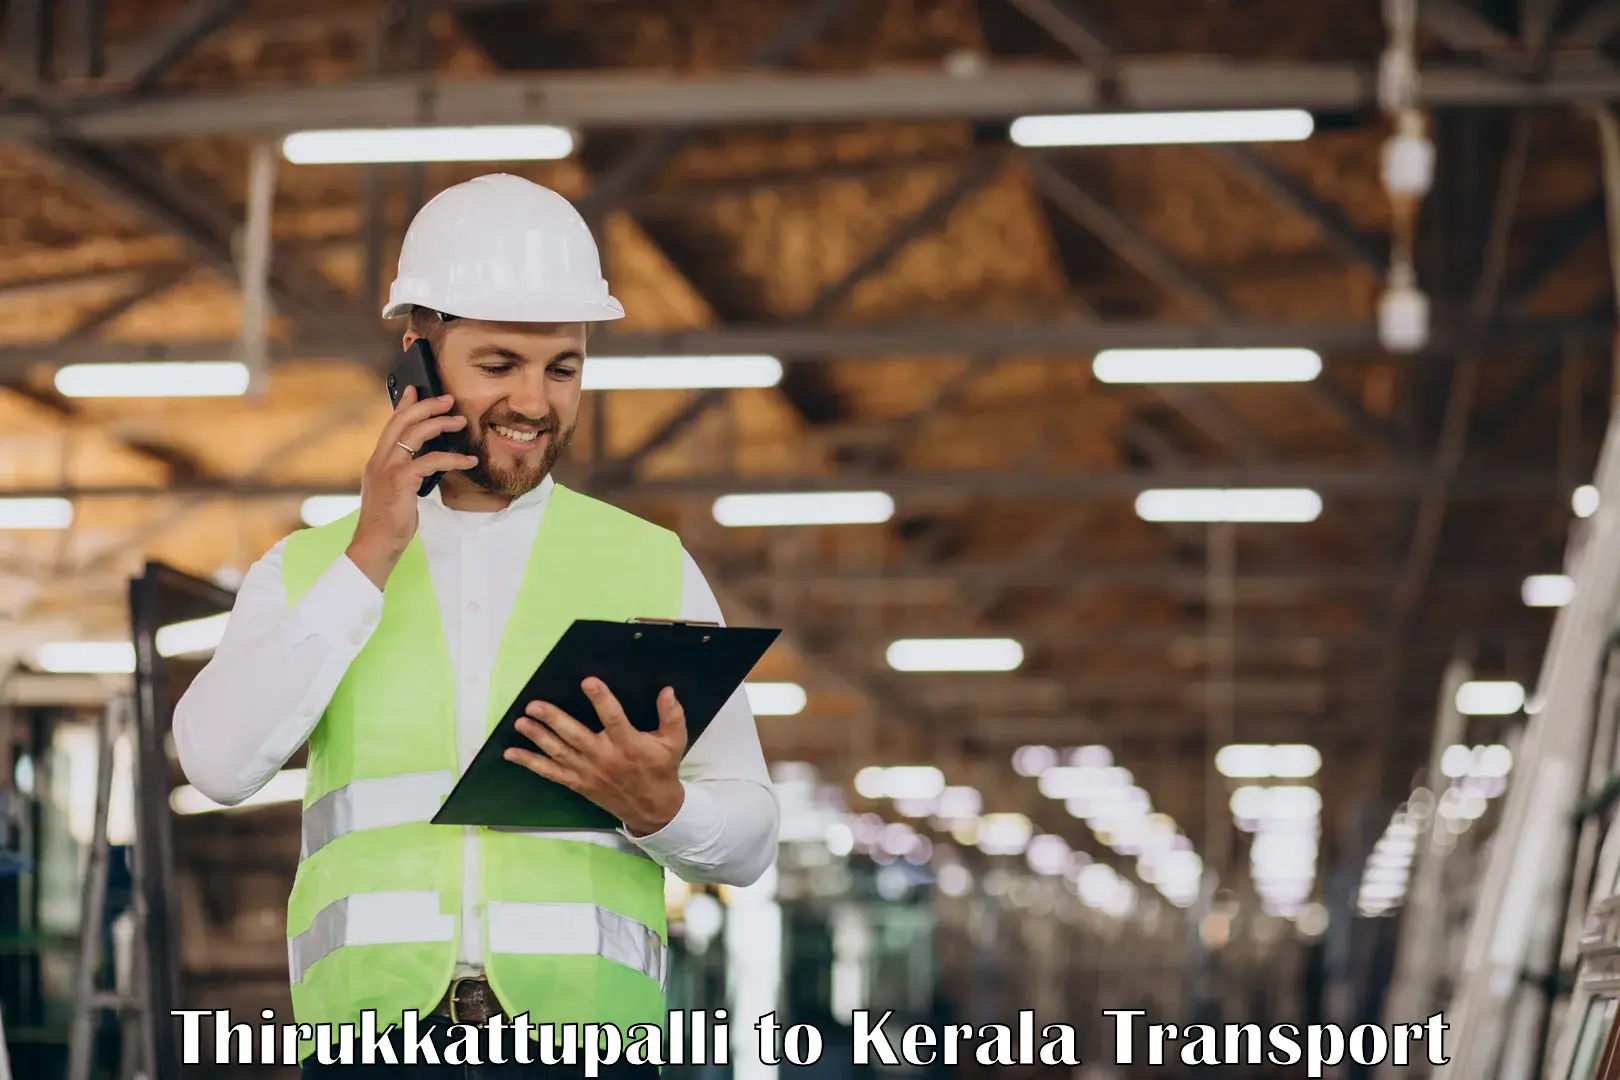 Furniture transport service Thirukkattupalli to Aluva